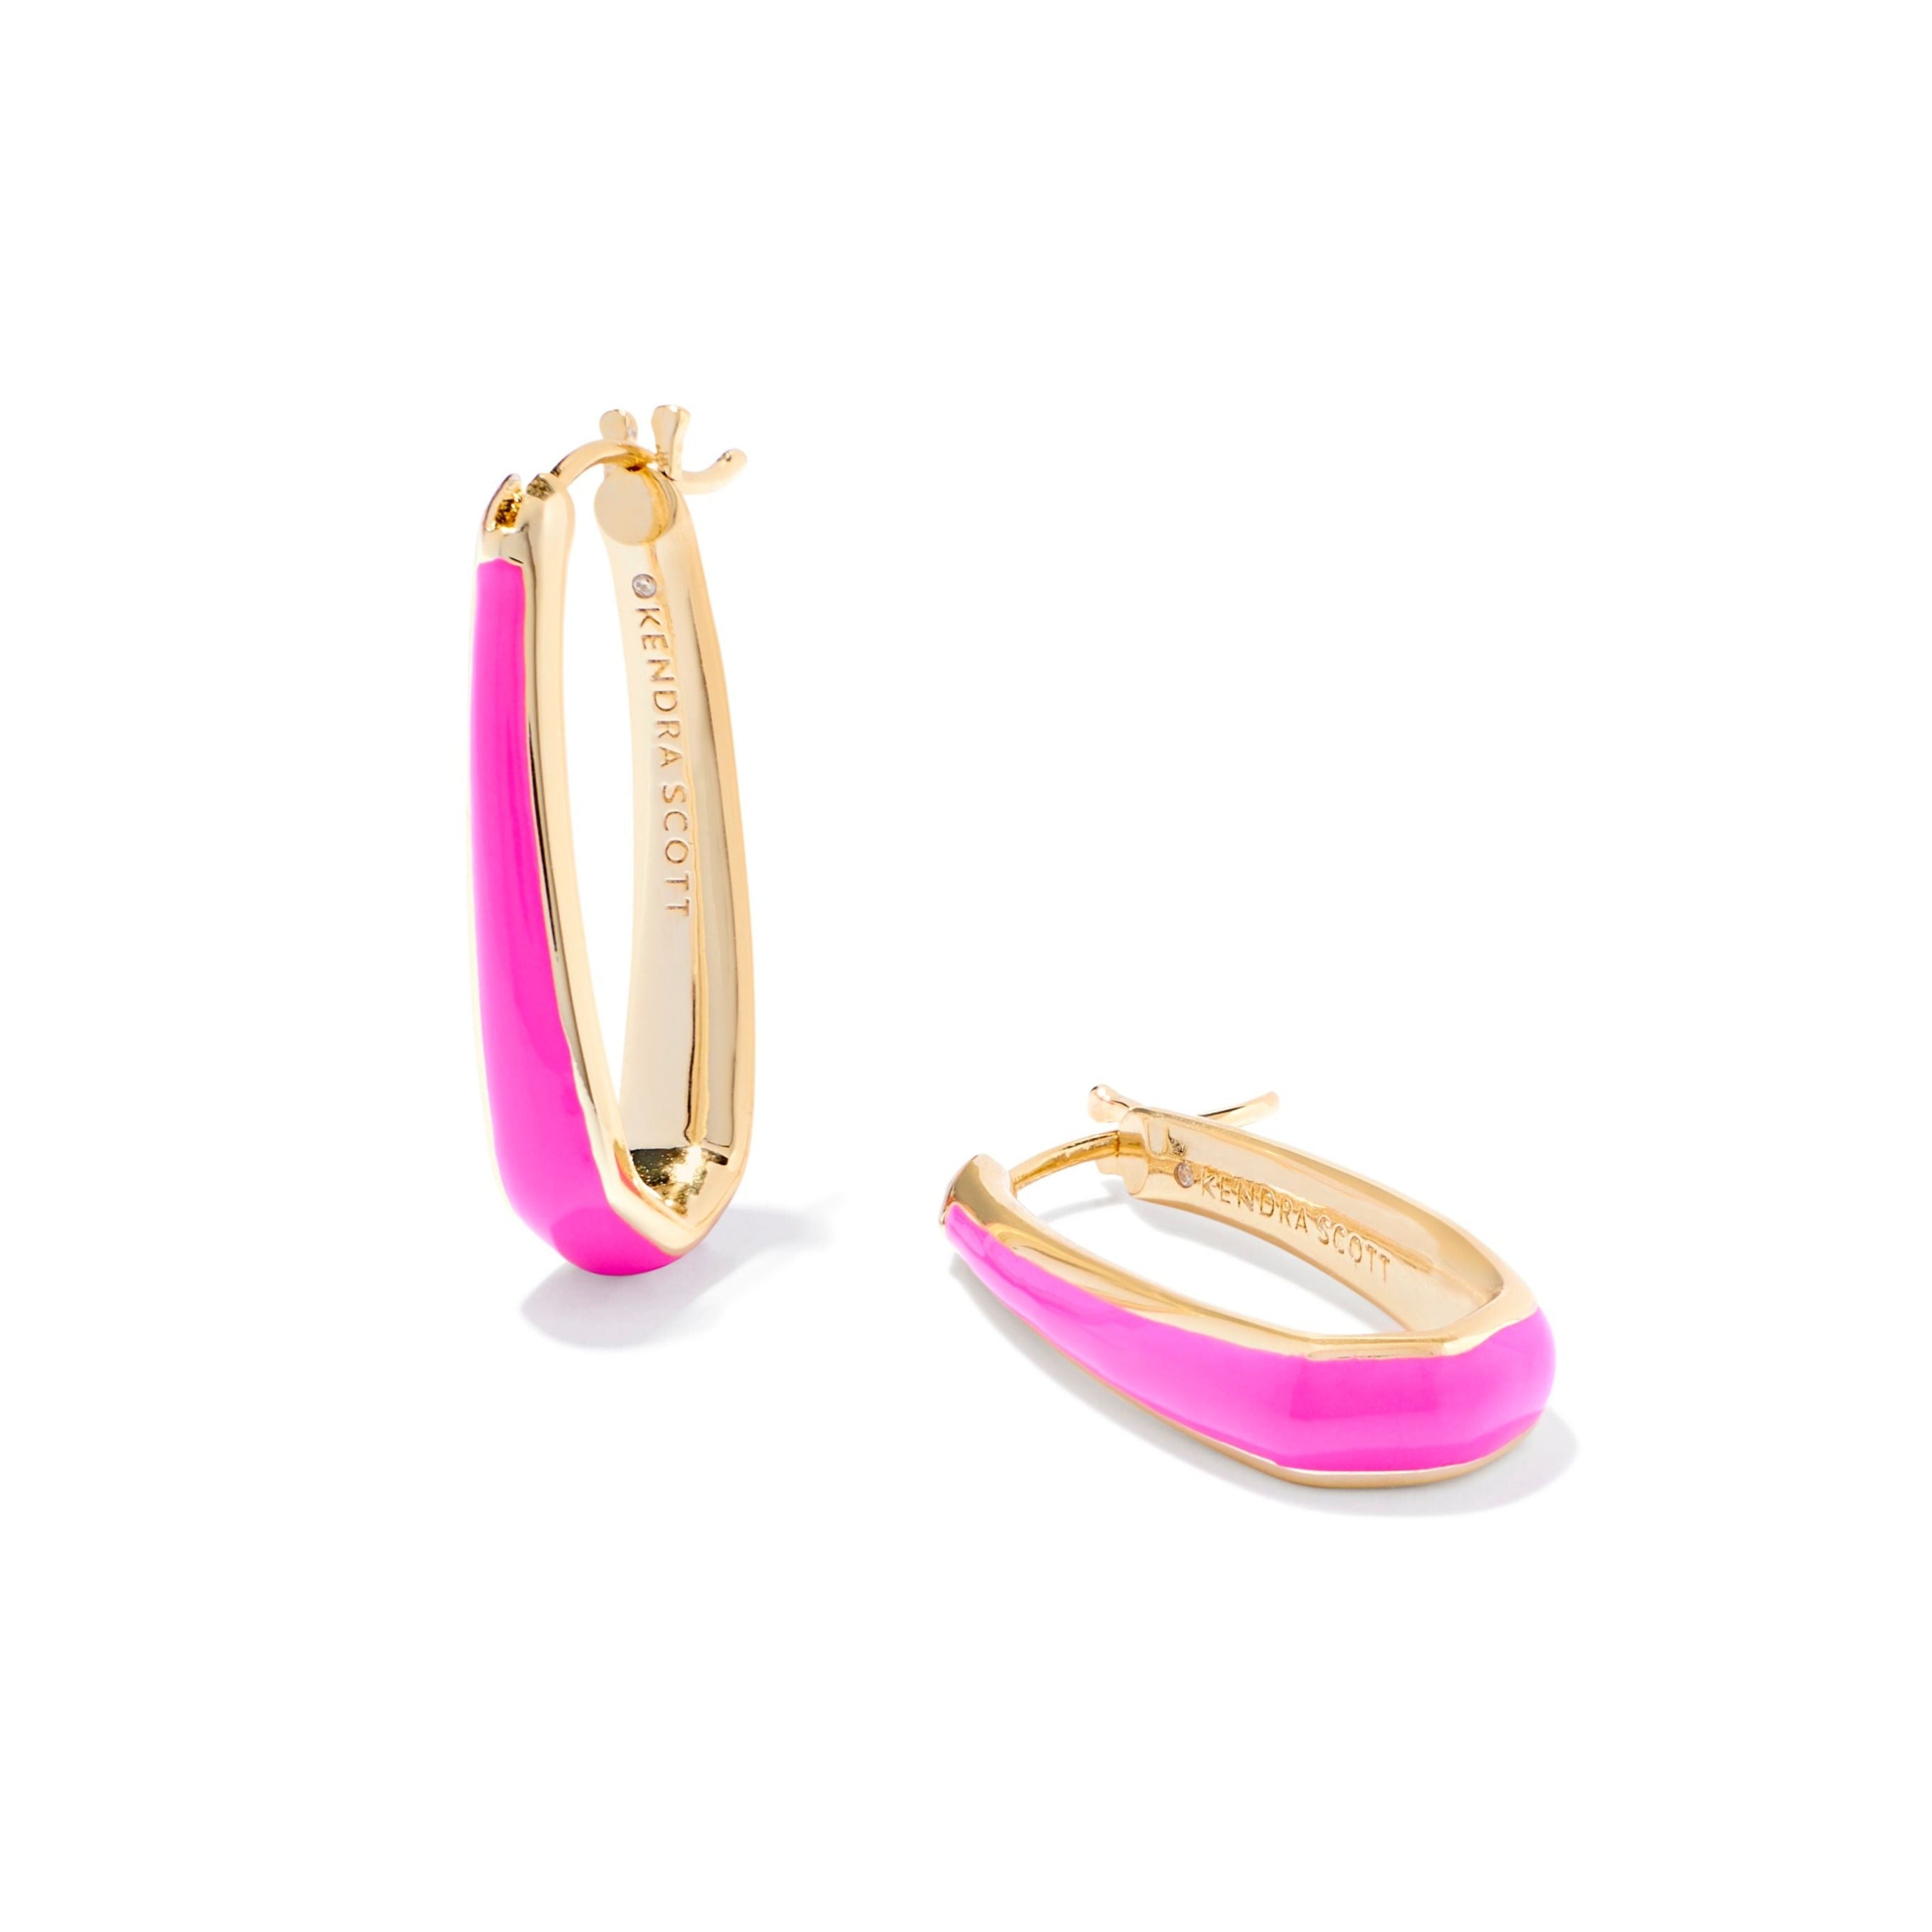 Kendra Scott | Kelsey Gold Hoop Earrings in Pink Enamel